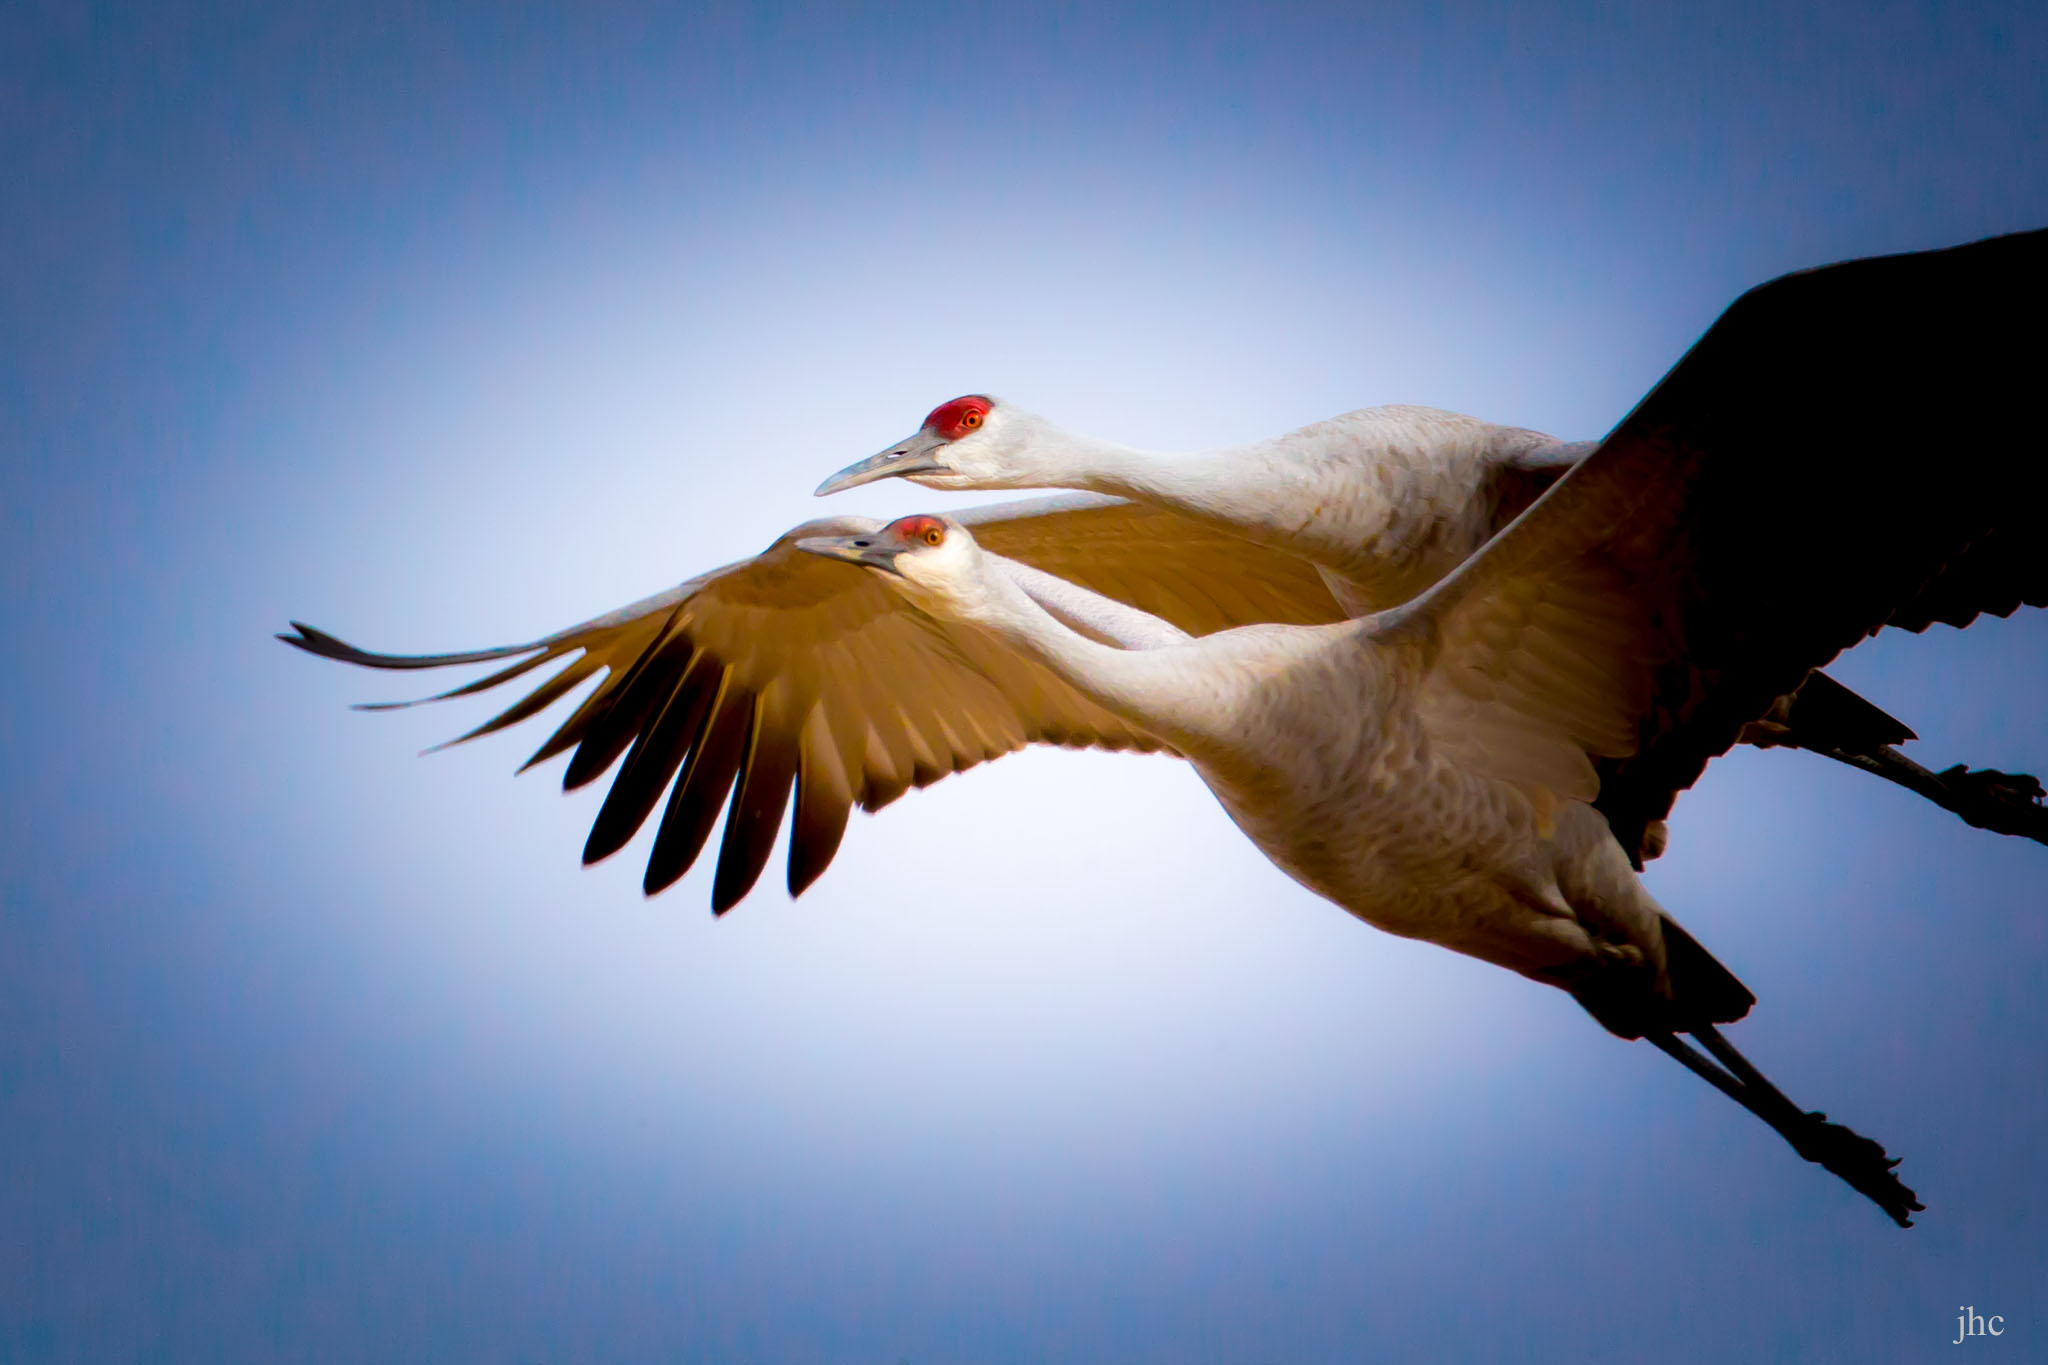 Sandhill Cranes flying at Bernardo Wildlife Management Area, Bernardo NM, February 8, 2014